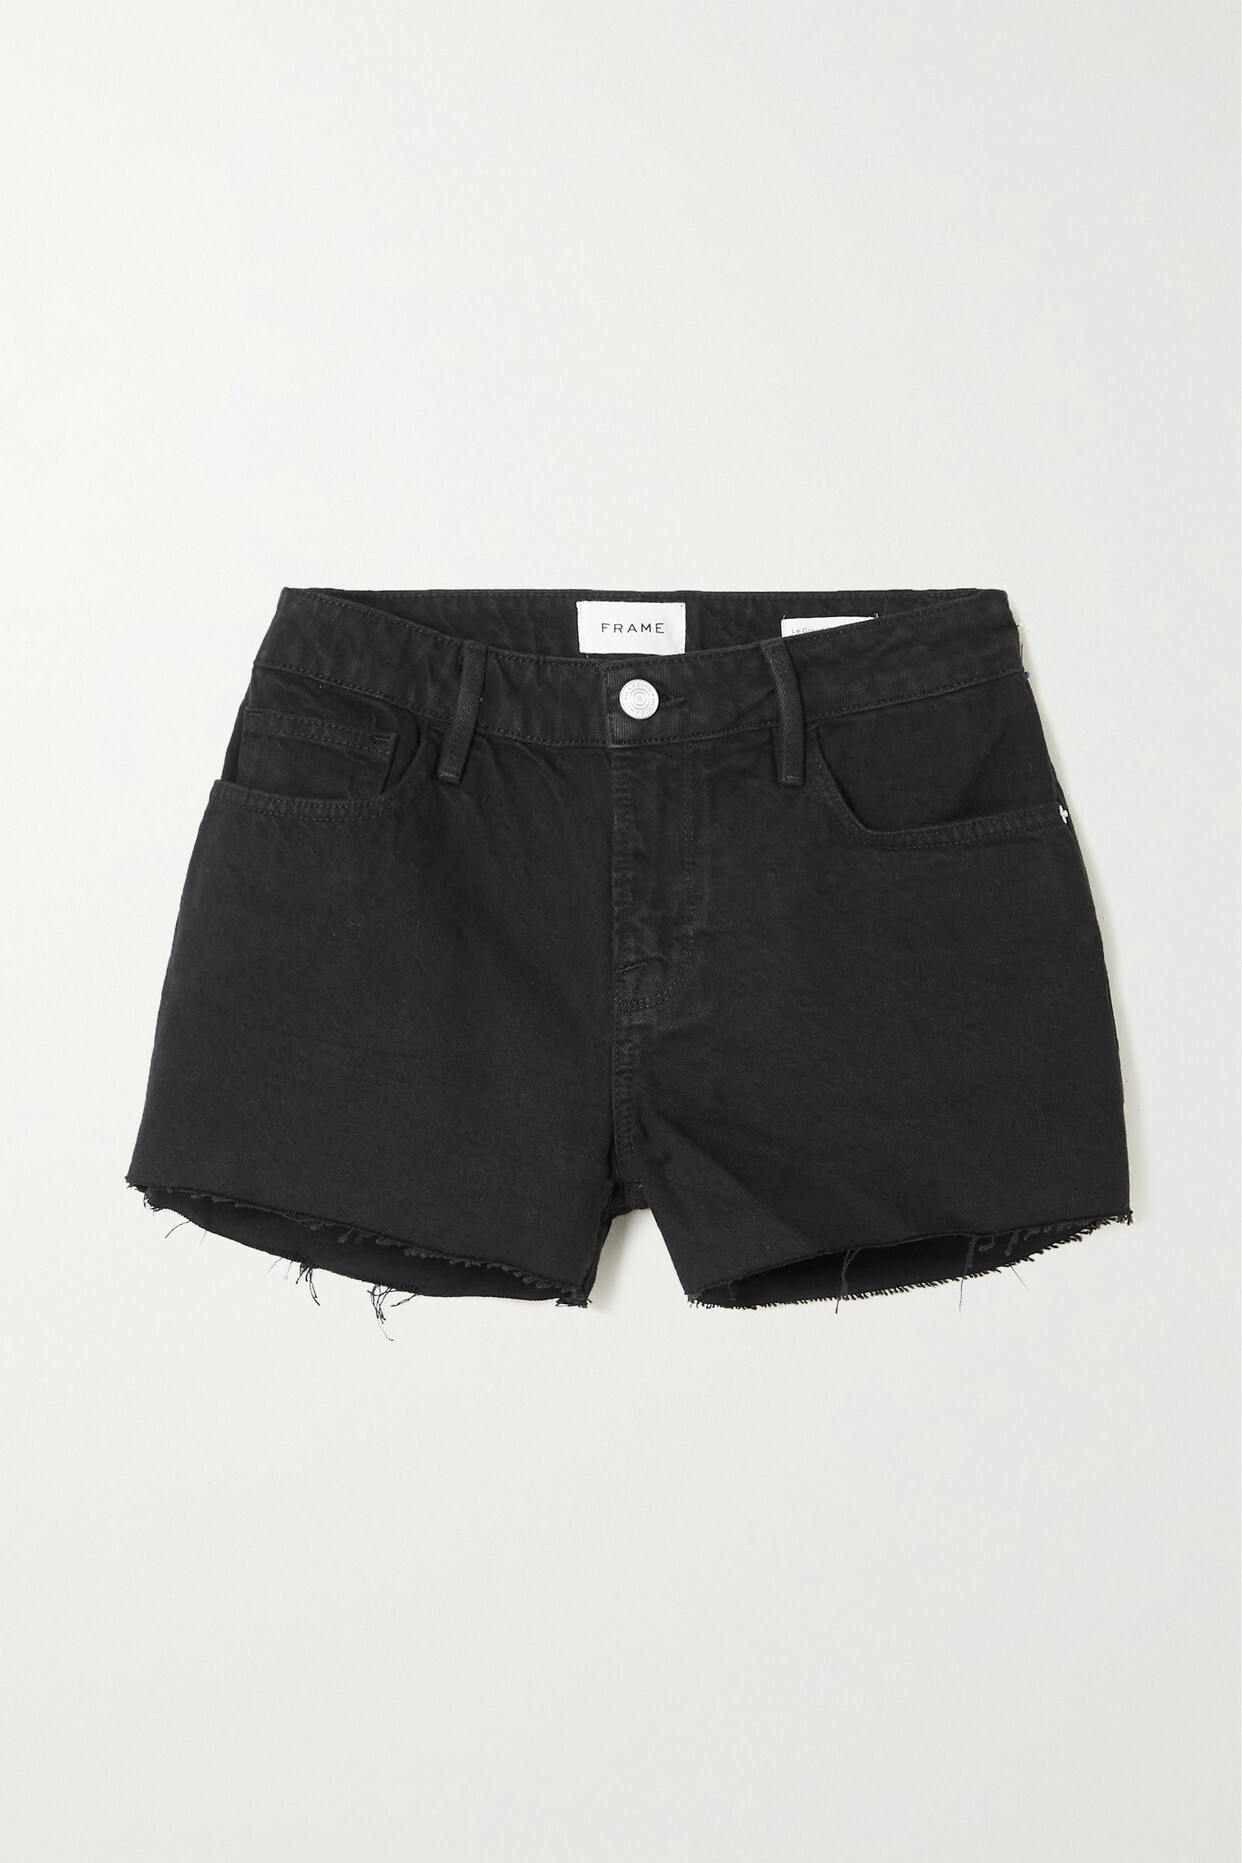 FRAME - Le Grand Garcon Frayed Denim Shorts - Black